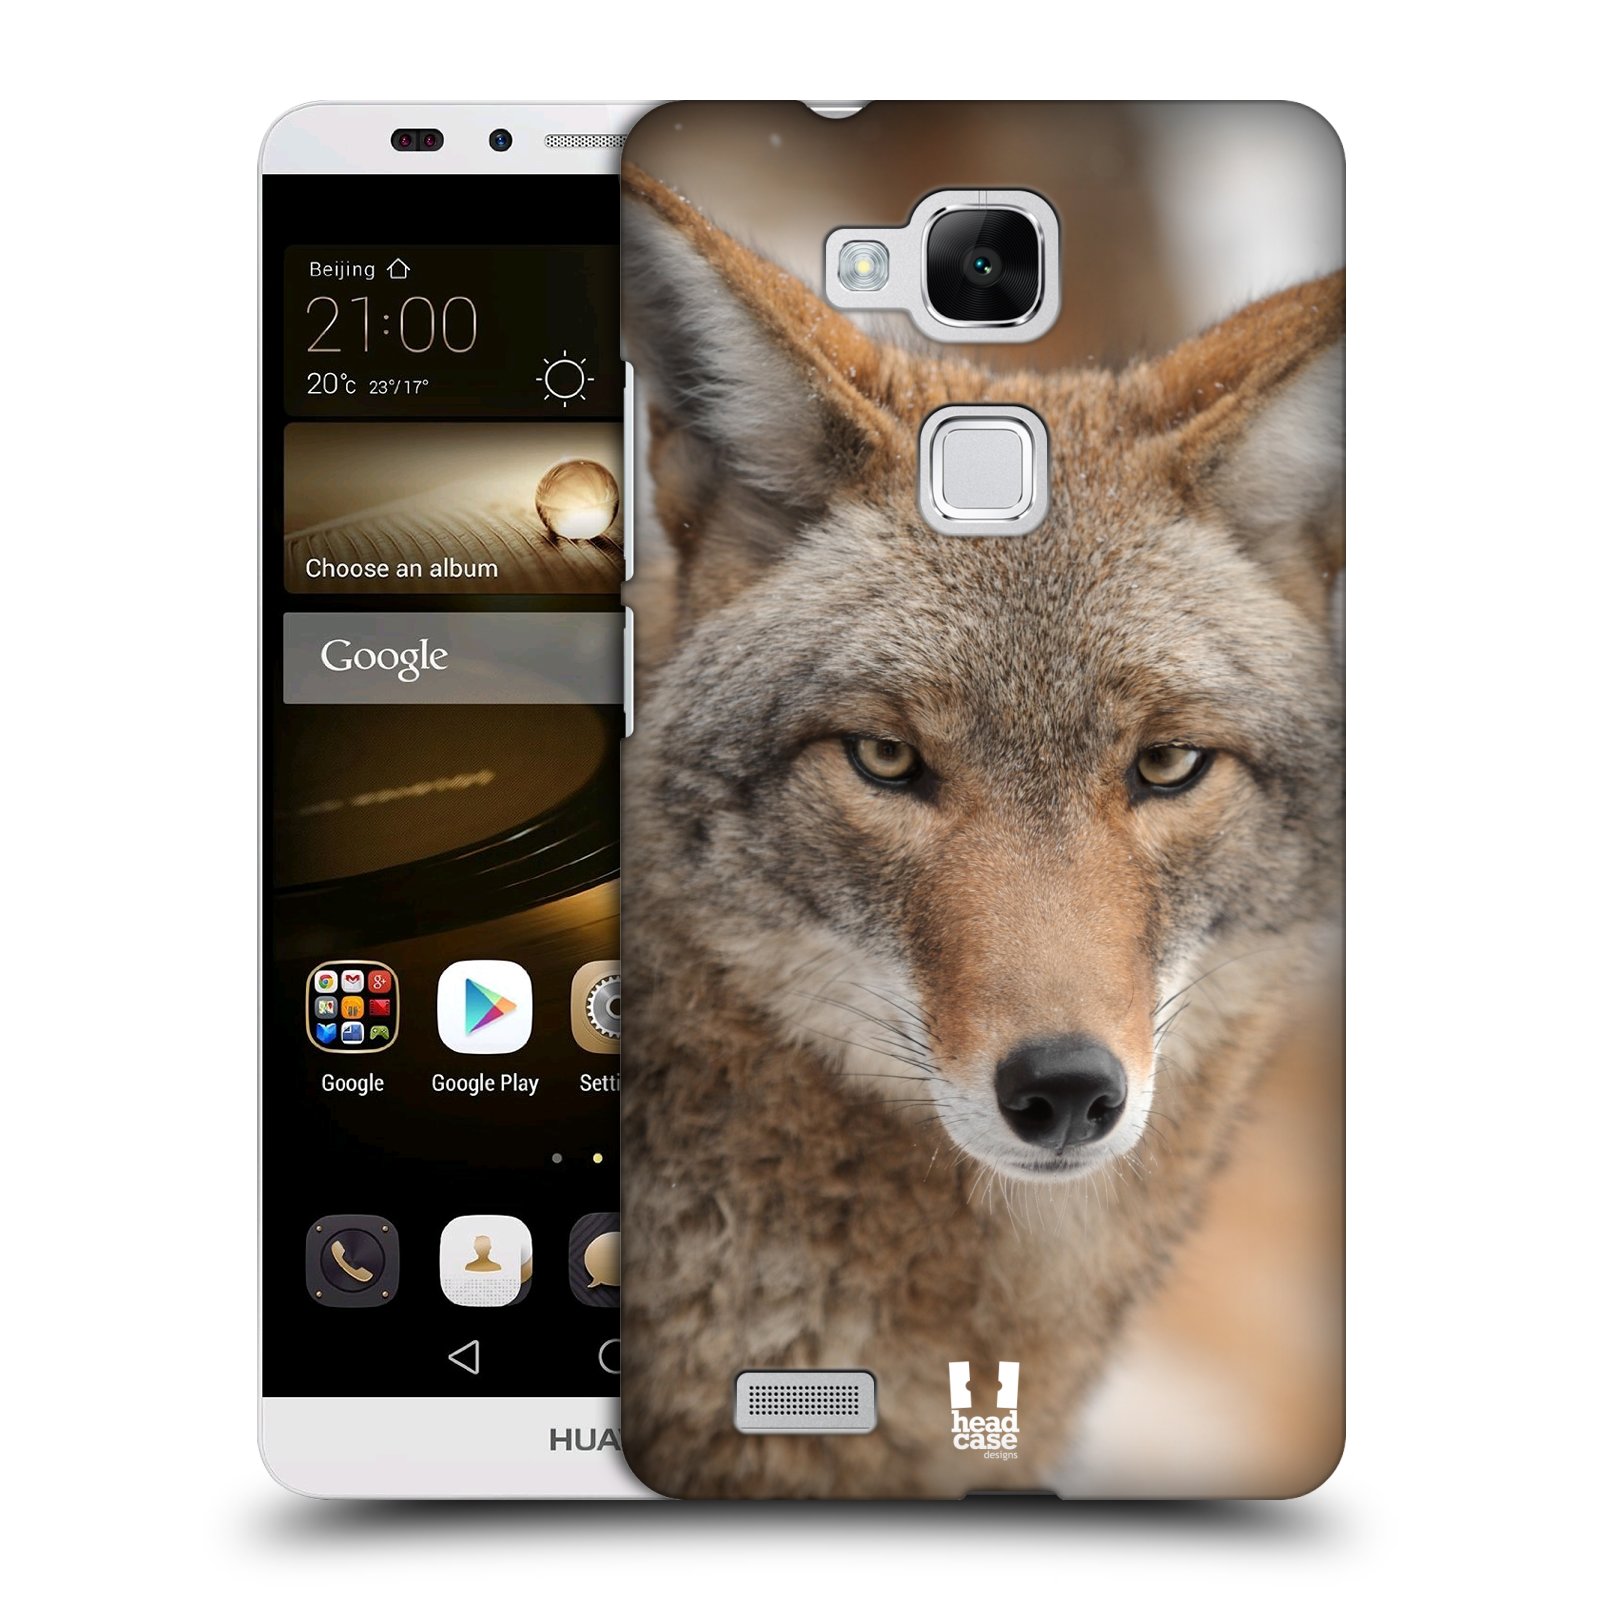 HEAD CASE plastový obal na mobil Huawei Mate 7 vzor slavná zvířata foto kojot